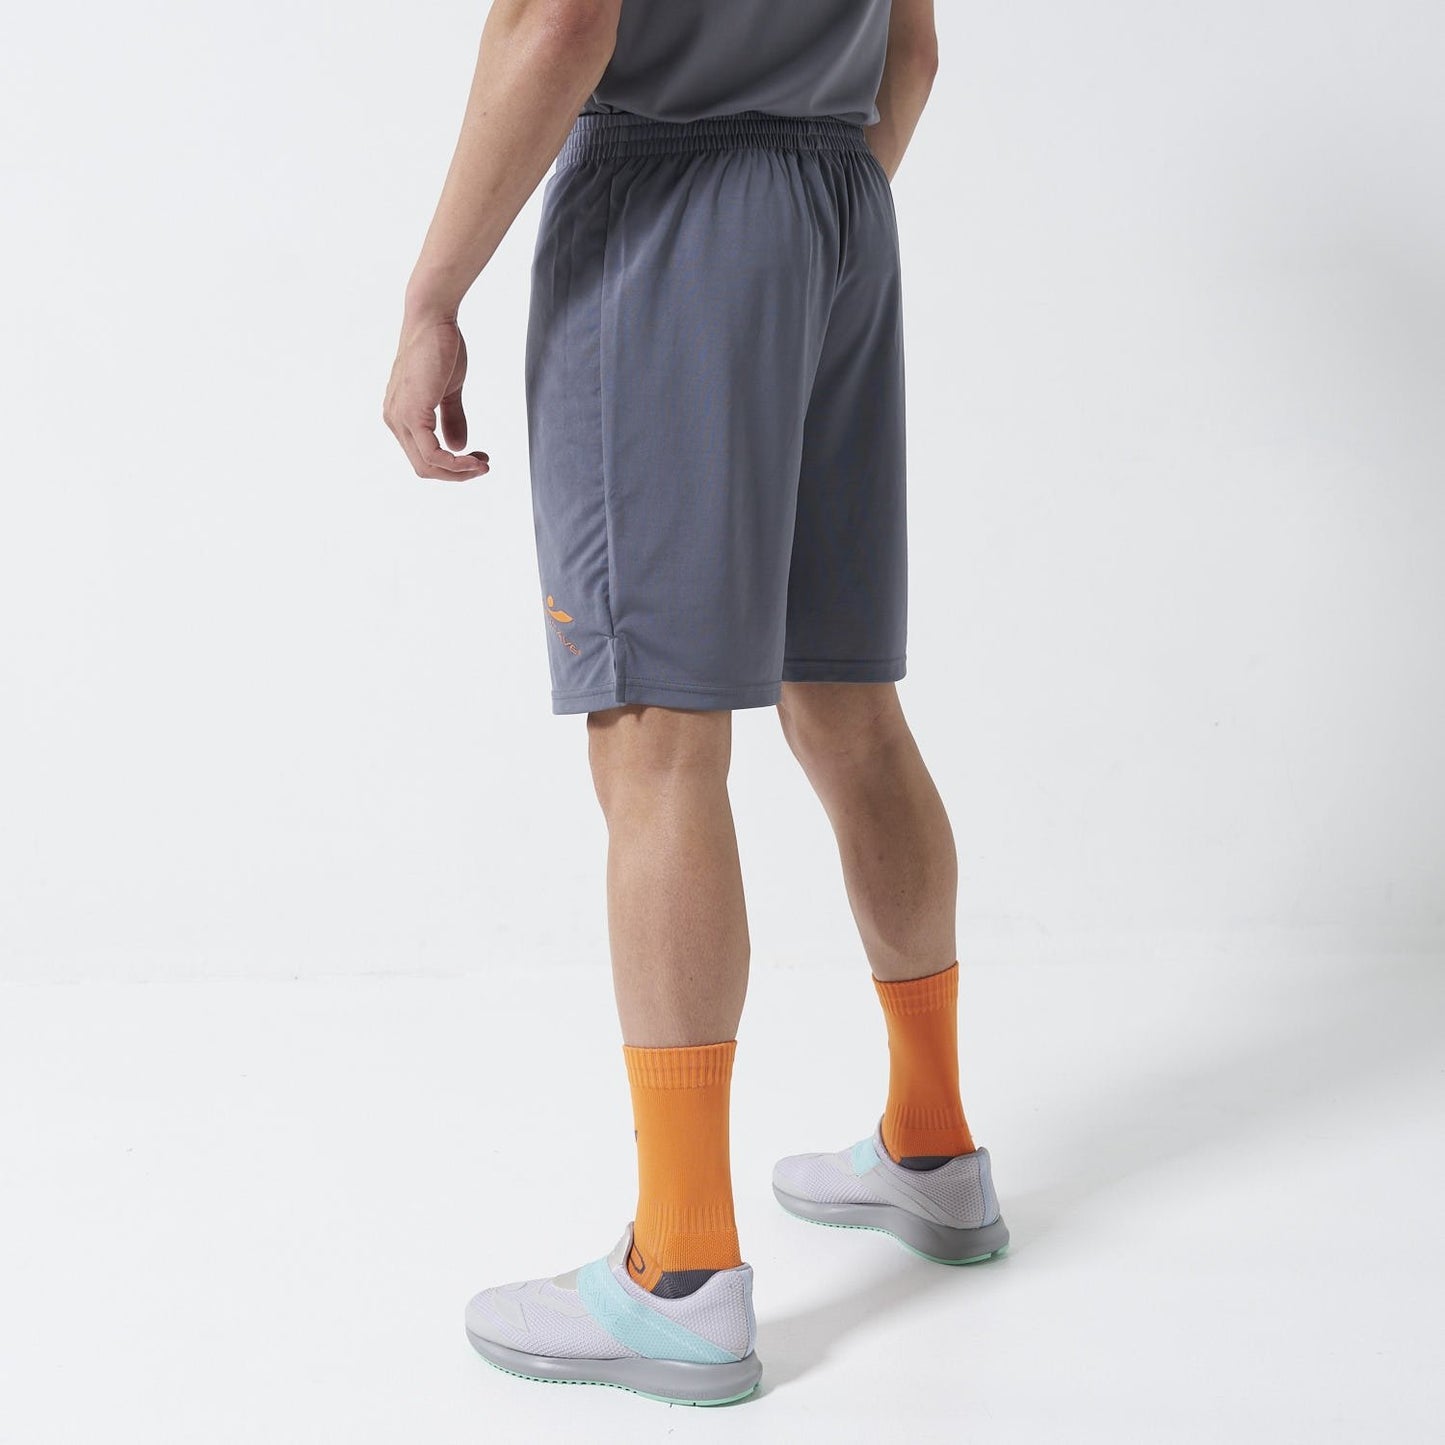 Concave Performance Shorts - Charcoal/Zest Orange